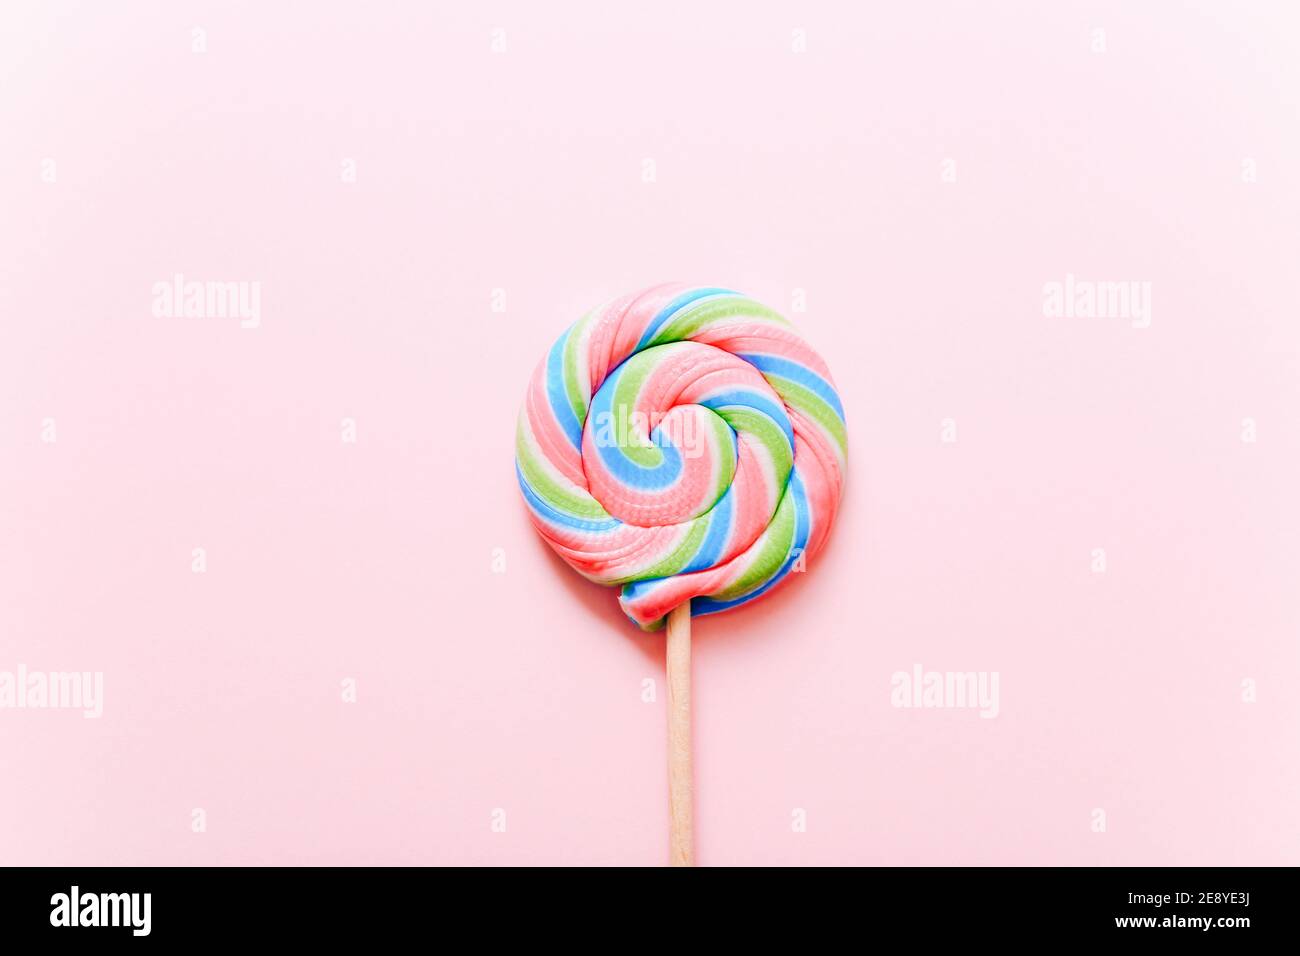 Bunte Lollipop wirbeln auf Stock. Gestreifte Spirale mehrfarbige Süßigkeiten auf rosa Hintergrund, Draufsicht Stockfoto